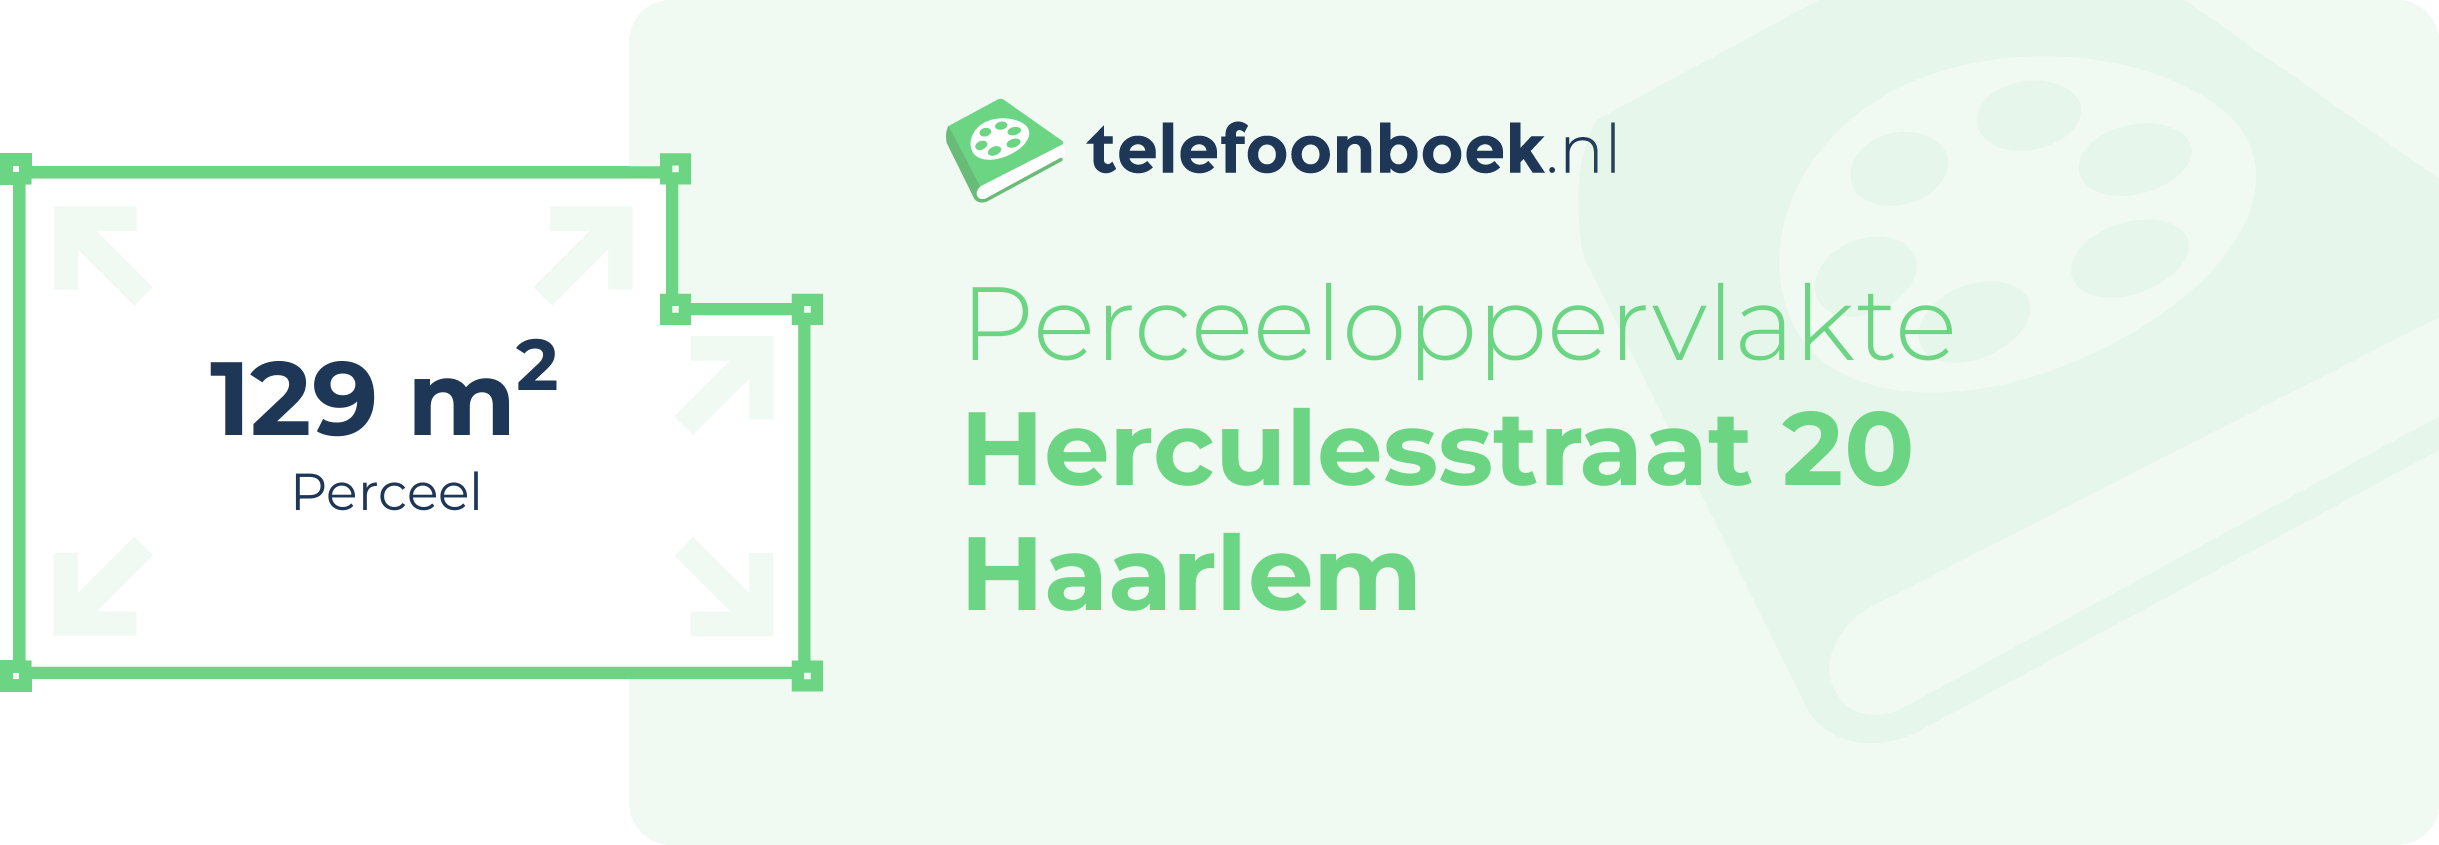 Perceeloppervlakte Herculesstraat 20 Haarlem